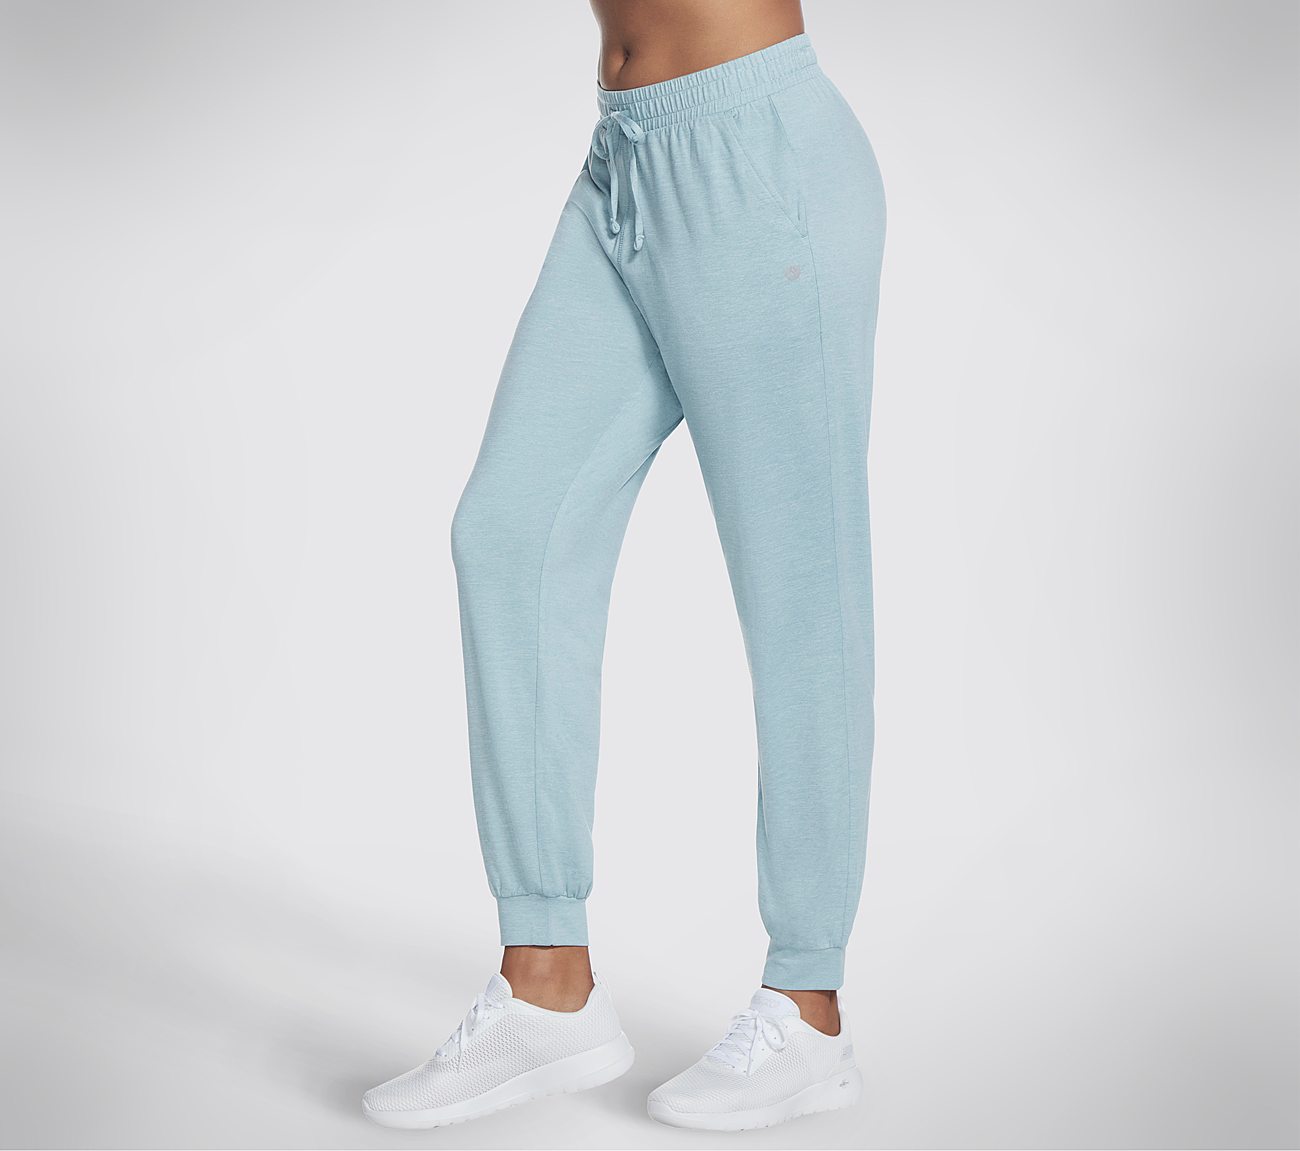 Light blue jogger pants